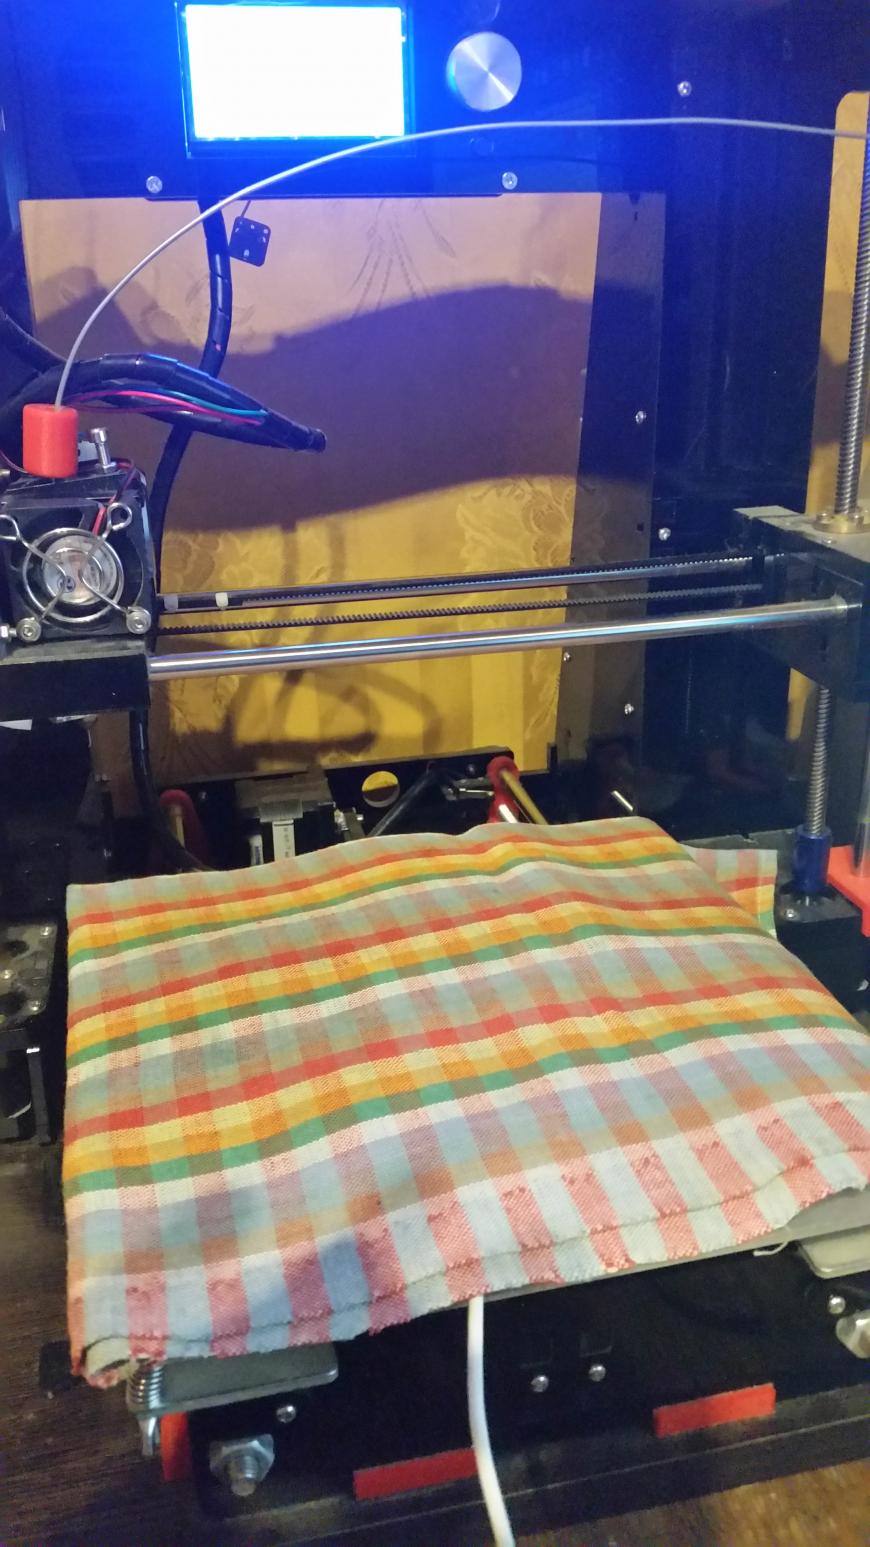 Еще одно альтернативное применение 3D принтера в хозяйстве